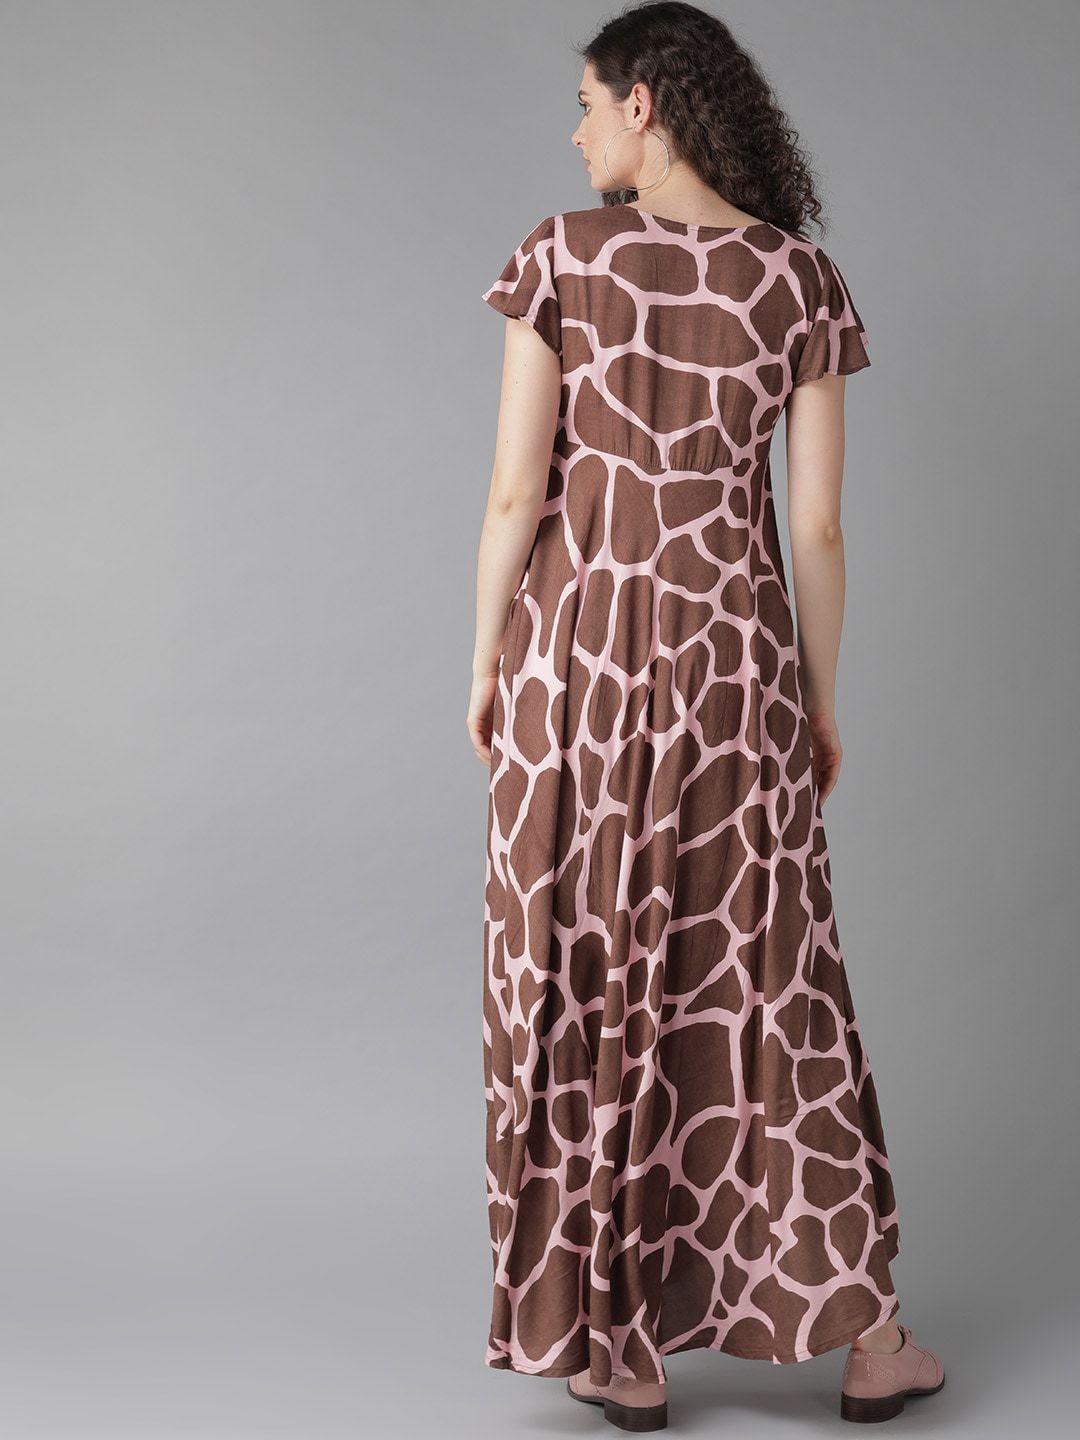 Women's  Pink & Brown Animal Printed Maxi Dress - AKS